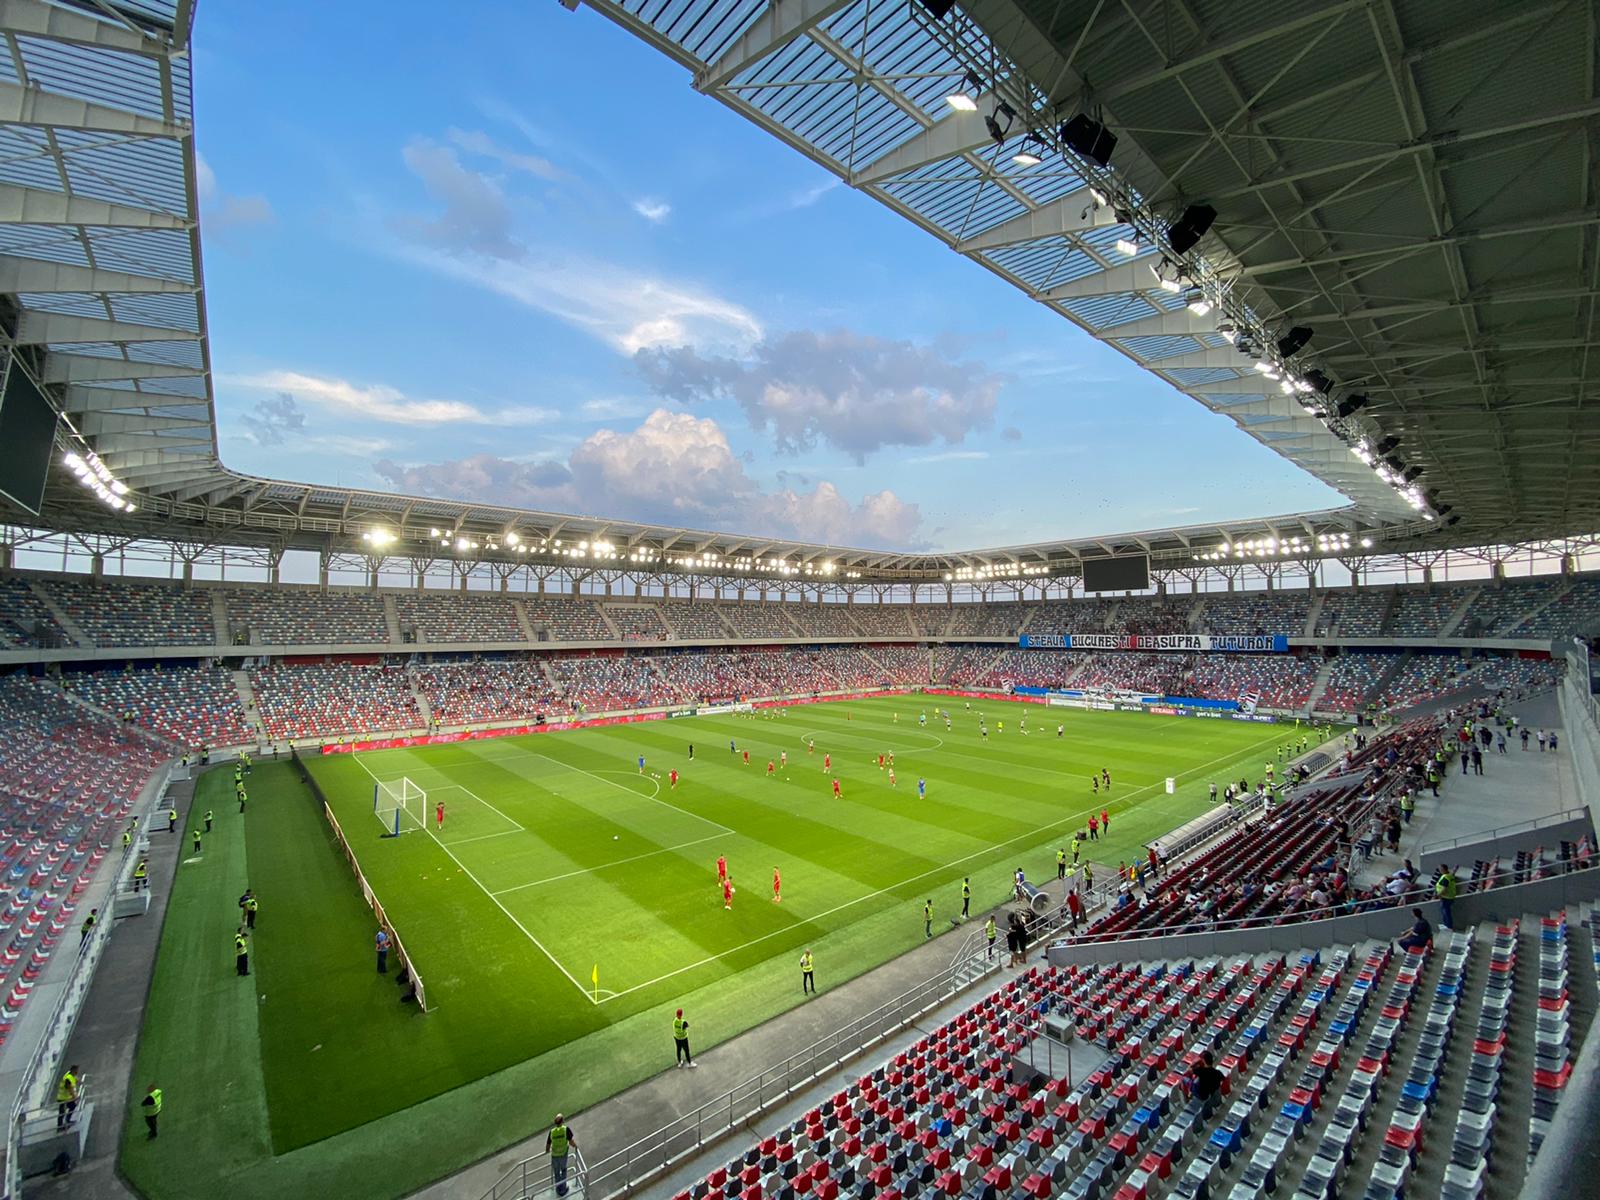 Exclusiv  Steaua București - FCSB 2 ar putea fi primul meci oficial  disputat pe noua arenă din Ghencea!